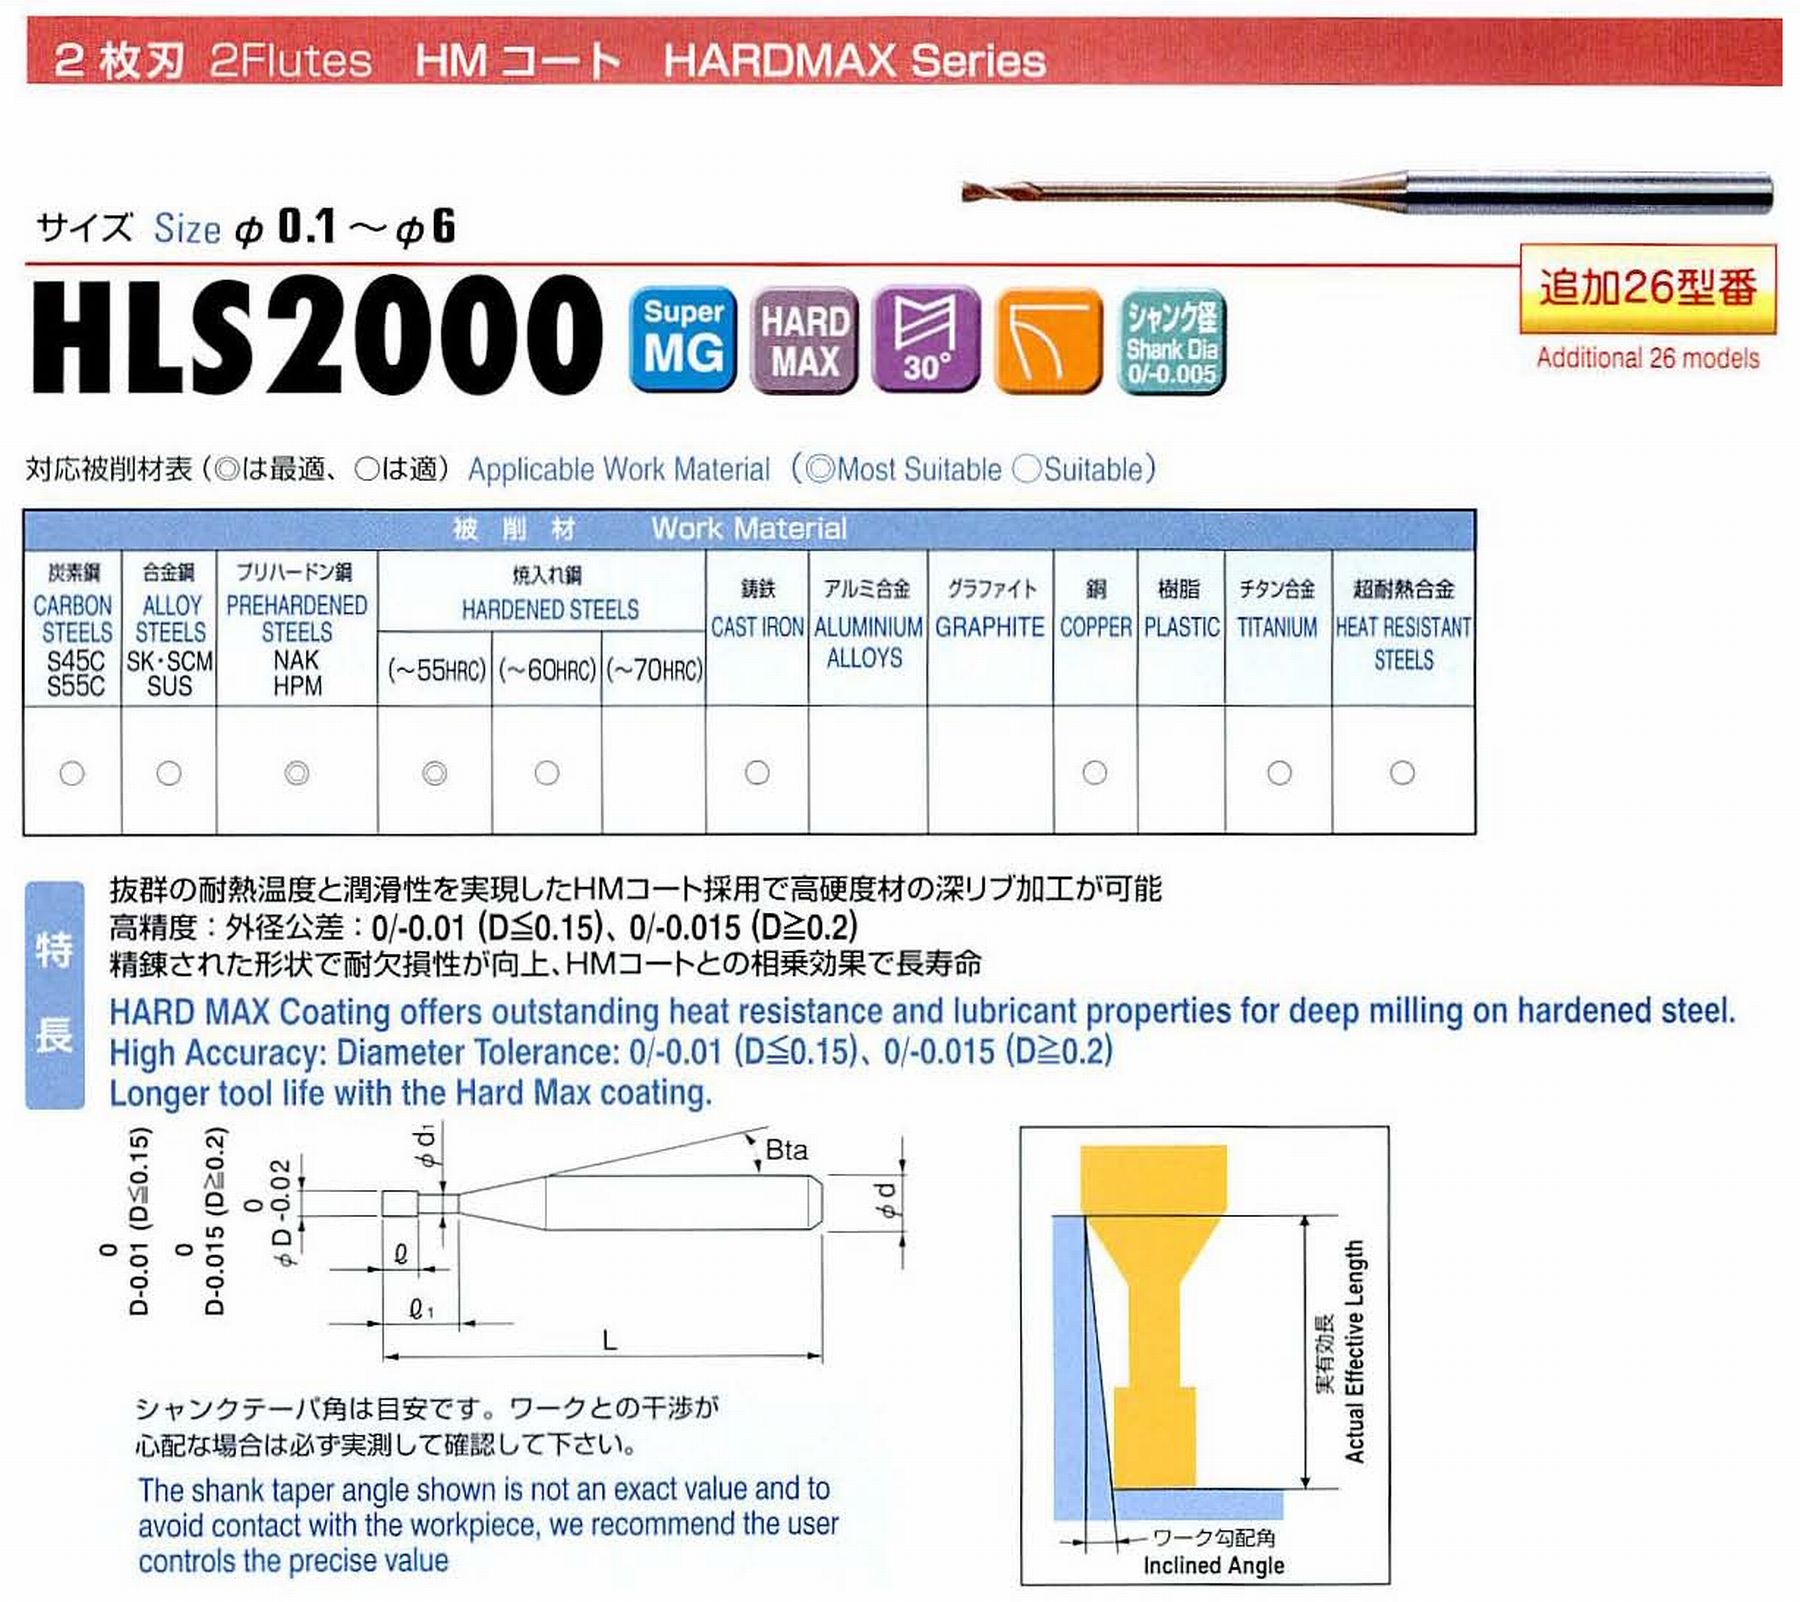 ユニオンツール 2枚刃 HLS2008-040 外径0.8 有効長4 刃長1.2 首径0.78 シャンクテーパ角16° 全長45 シャンク径4